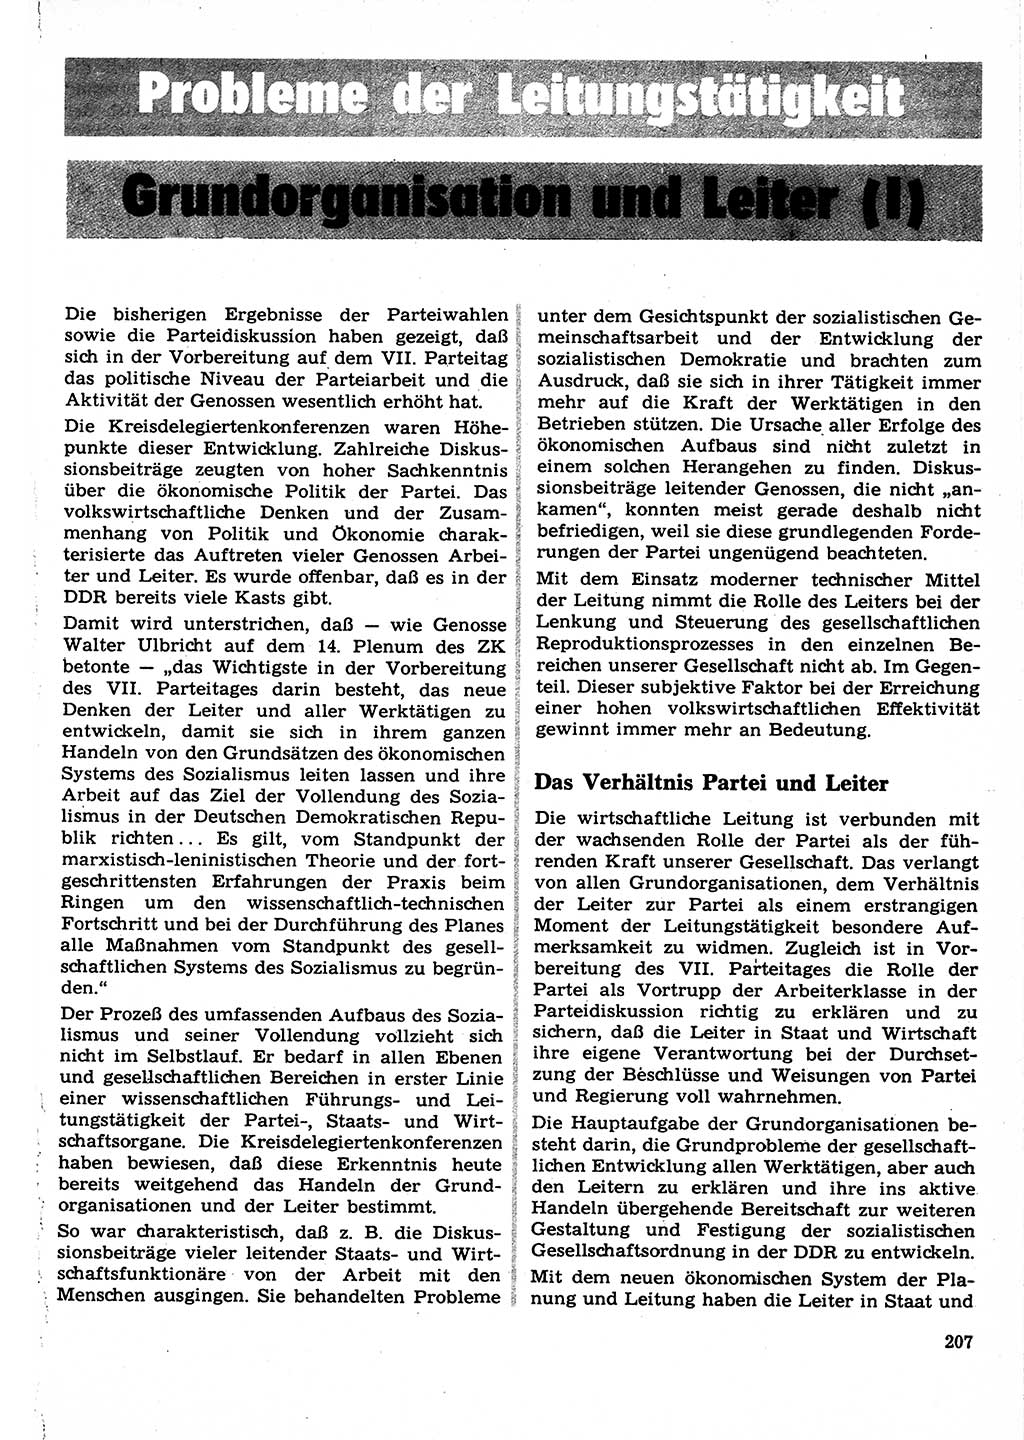 Neuer Weg (NW), Organ des Zentralkomitees (ZK) der SED (Sozialistische Einheitspartei Deutschlands) für Fragen des Parteilebens, 22. Jahrgang [Deutsche Demokratische Republik (DDR)] 1967, Seite 207 (NW ZK SED DDR 1967, S. 207)